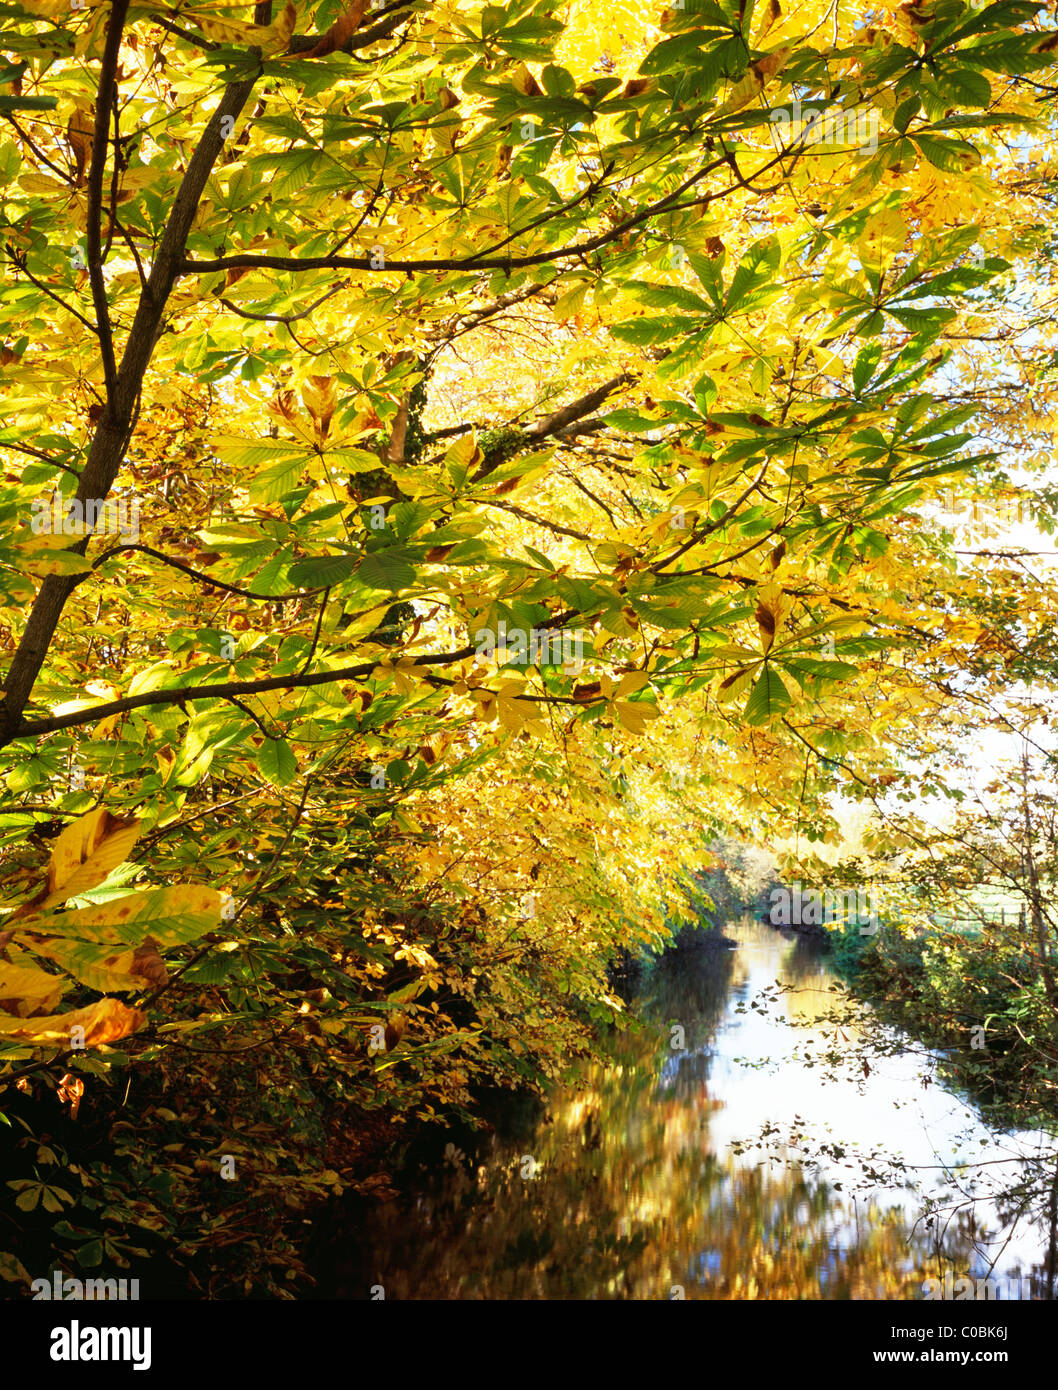 Le marronnier d'arbres poussant à côté de la rivière Wylye près du village de Boyton dans le Wiltshire, Angleterre. Banque D'Images